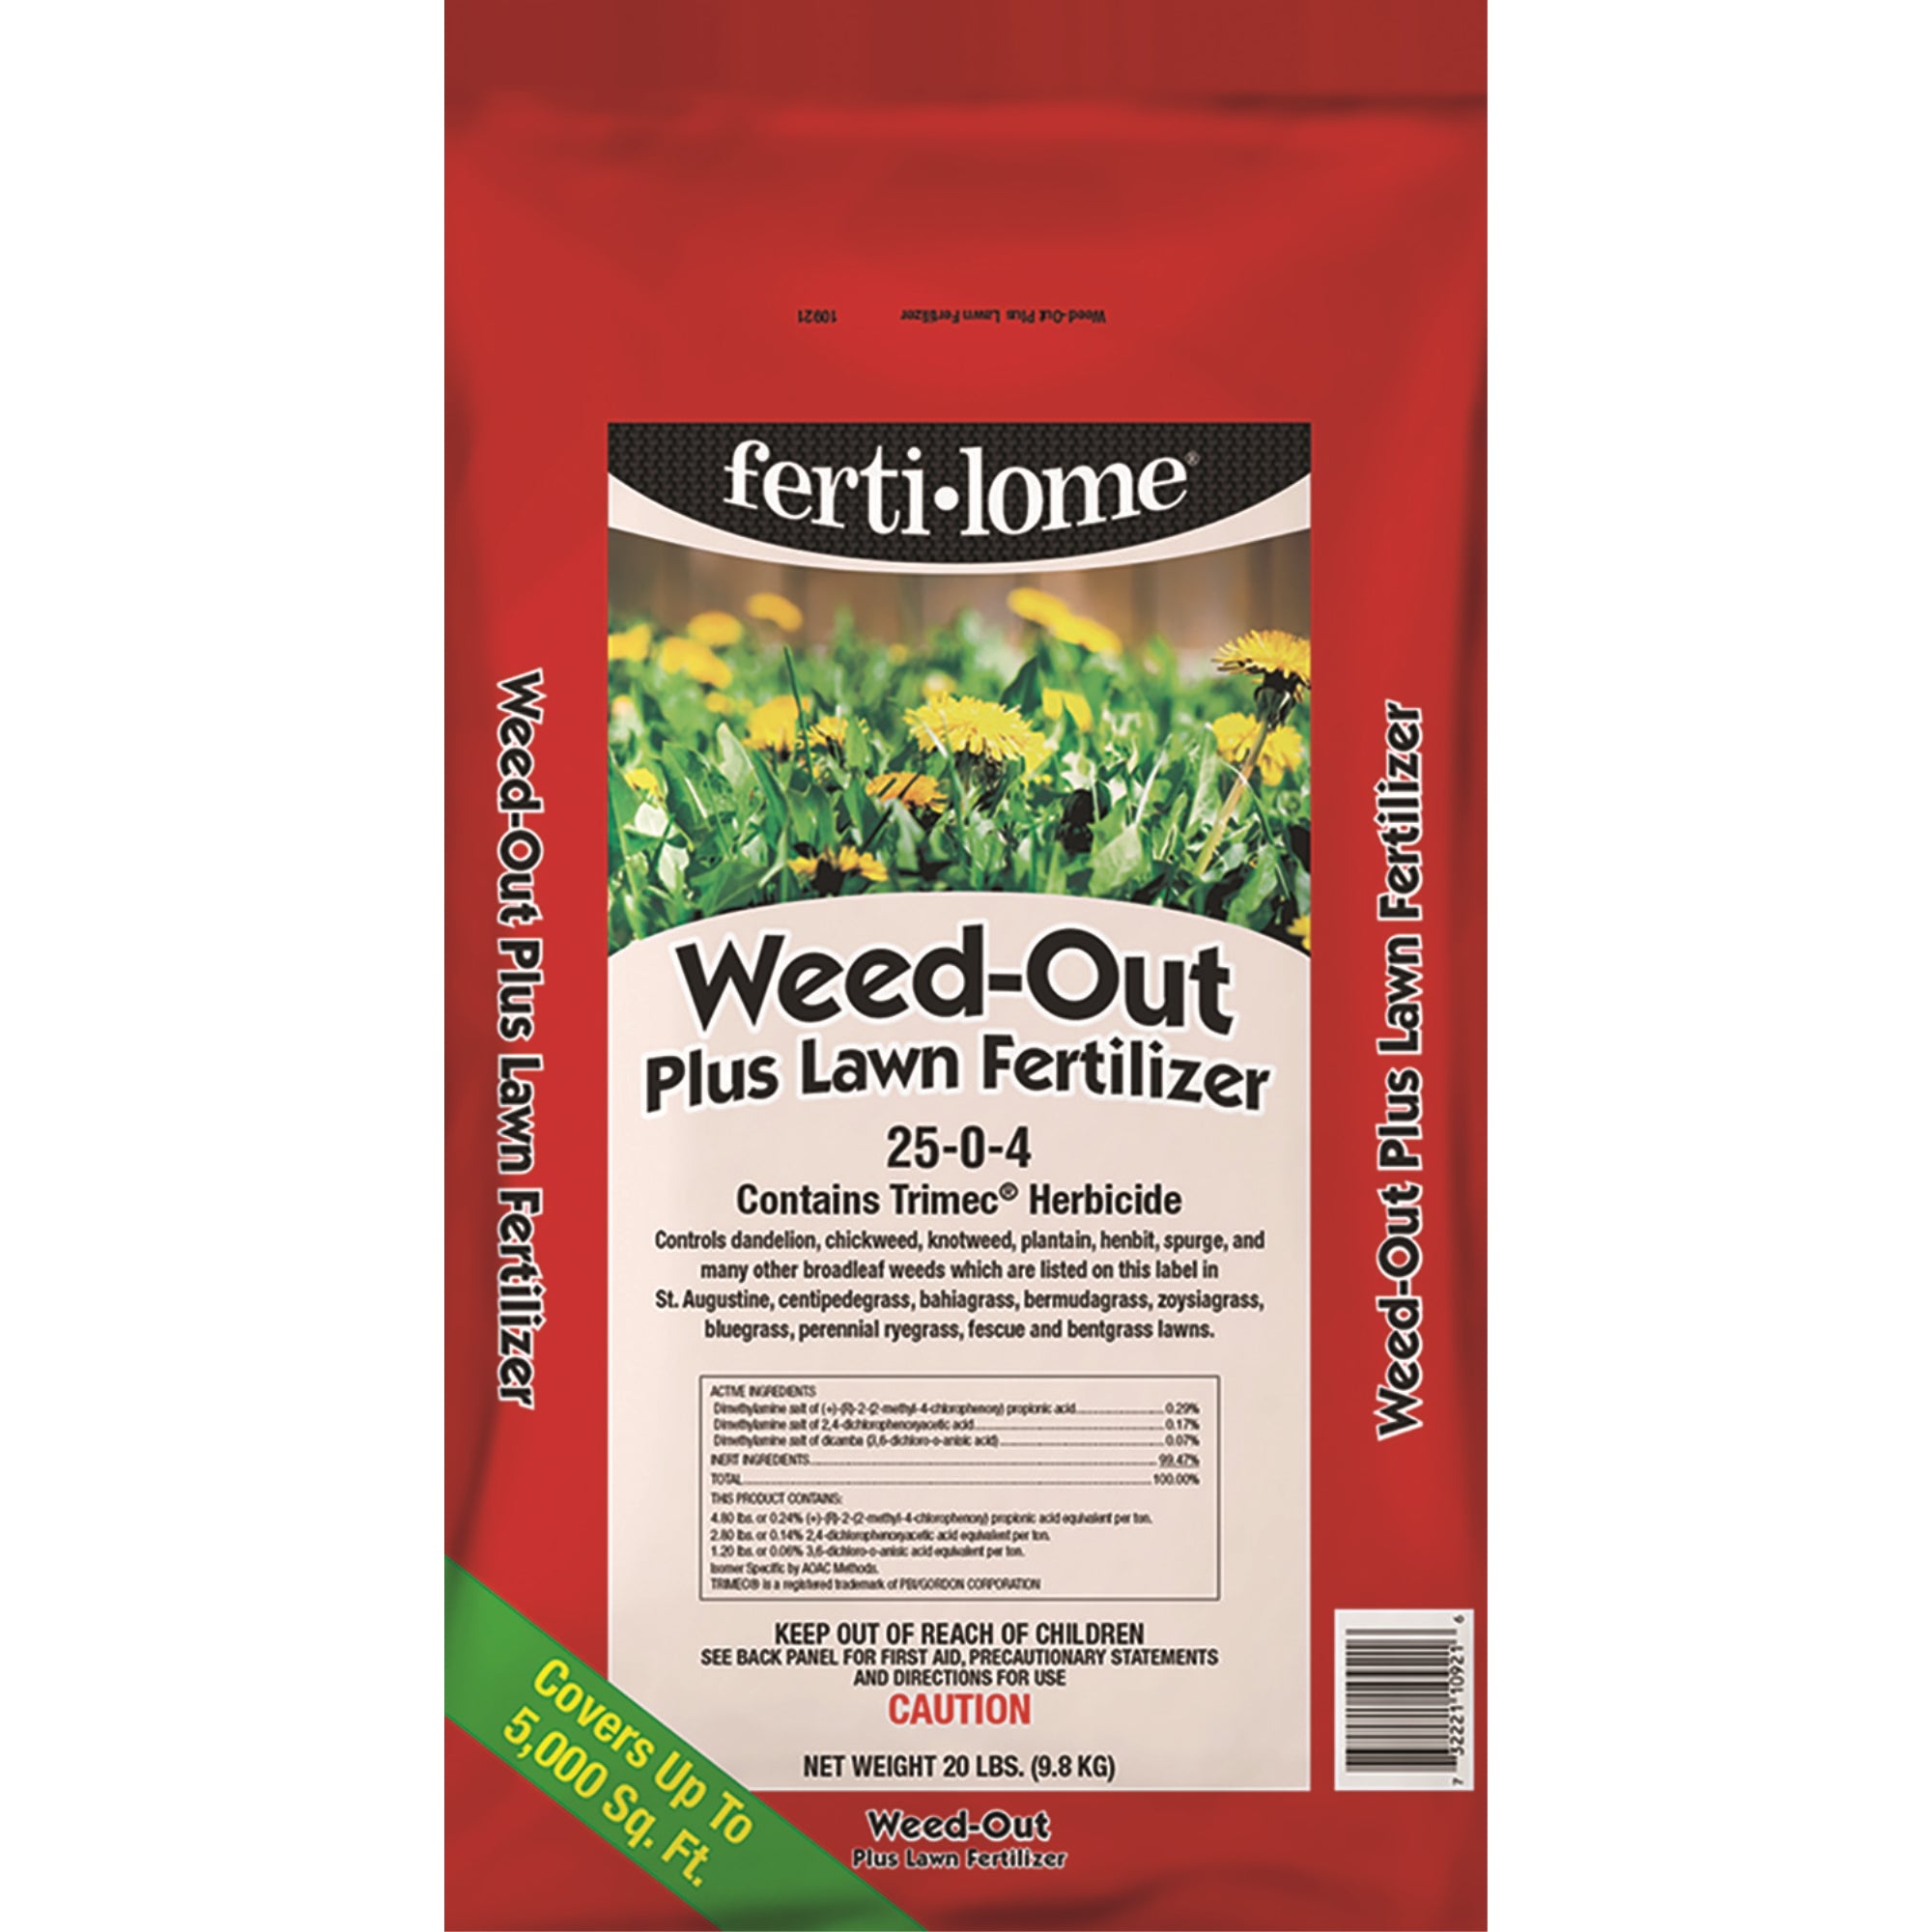 VPG Fertilome Weed Out Plus Lawn Fertilizer 25-0-4